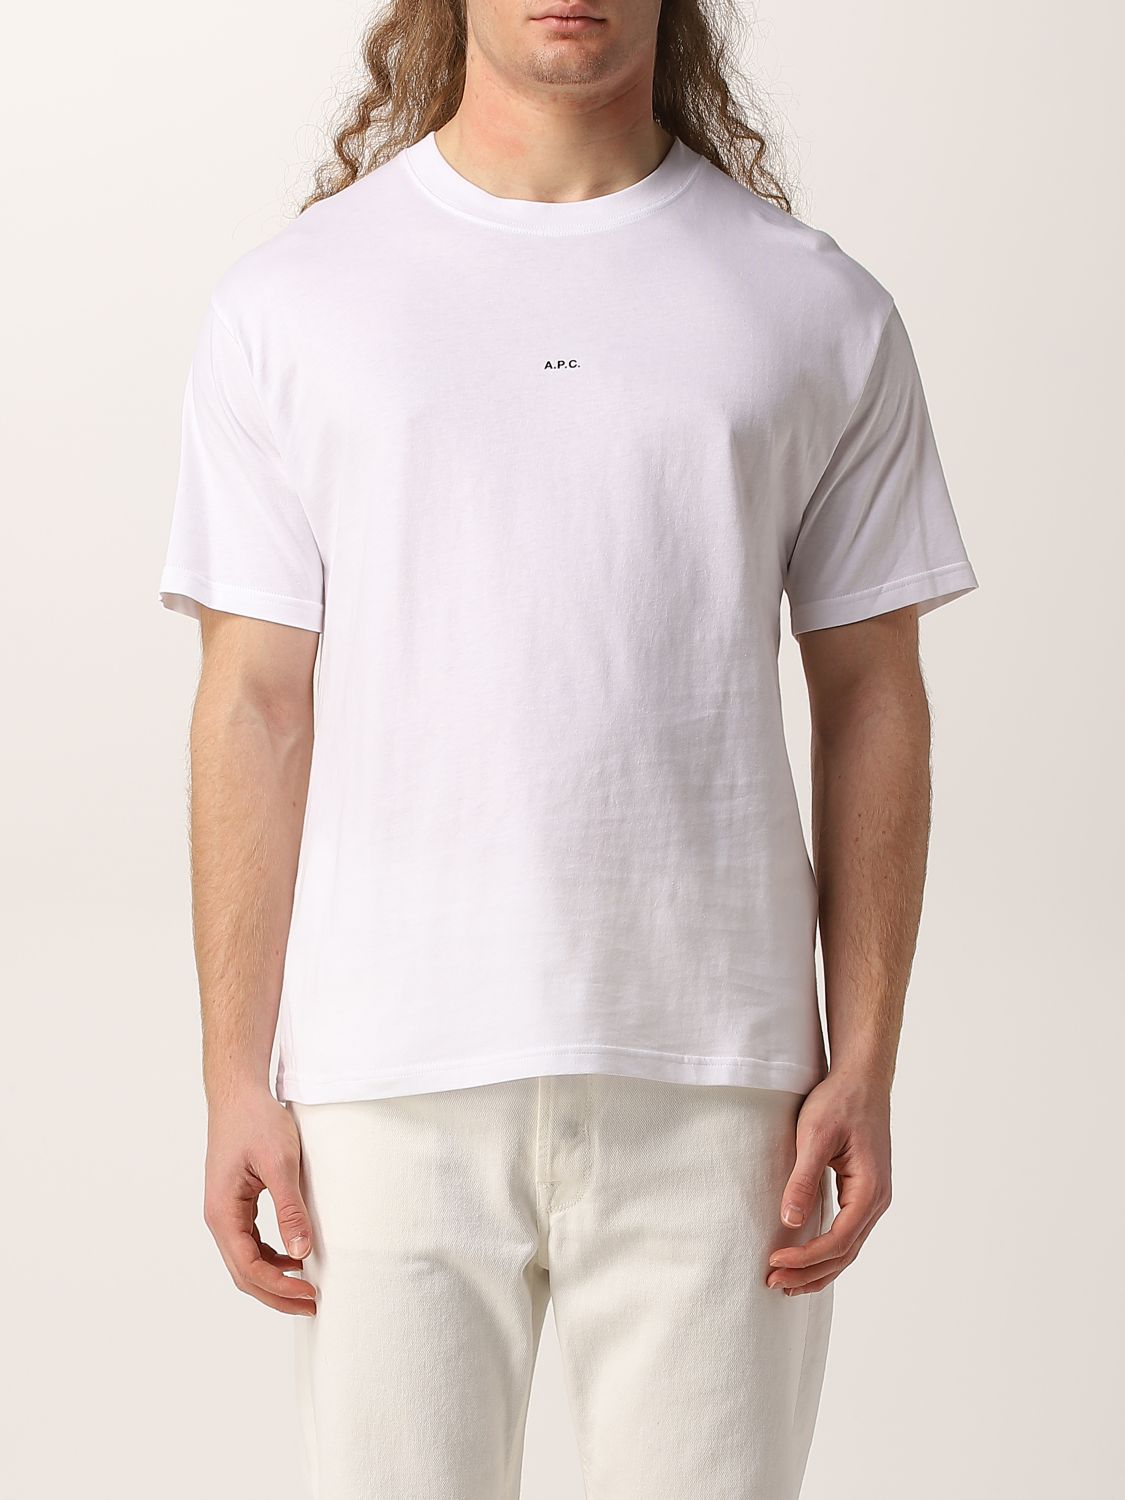 T-shirt A.p.c.: A.p.c. cotton jersey T-shirt with mini logo white 1